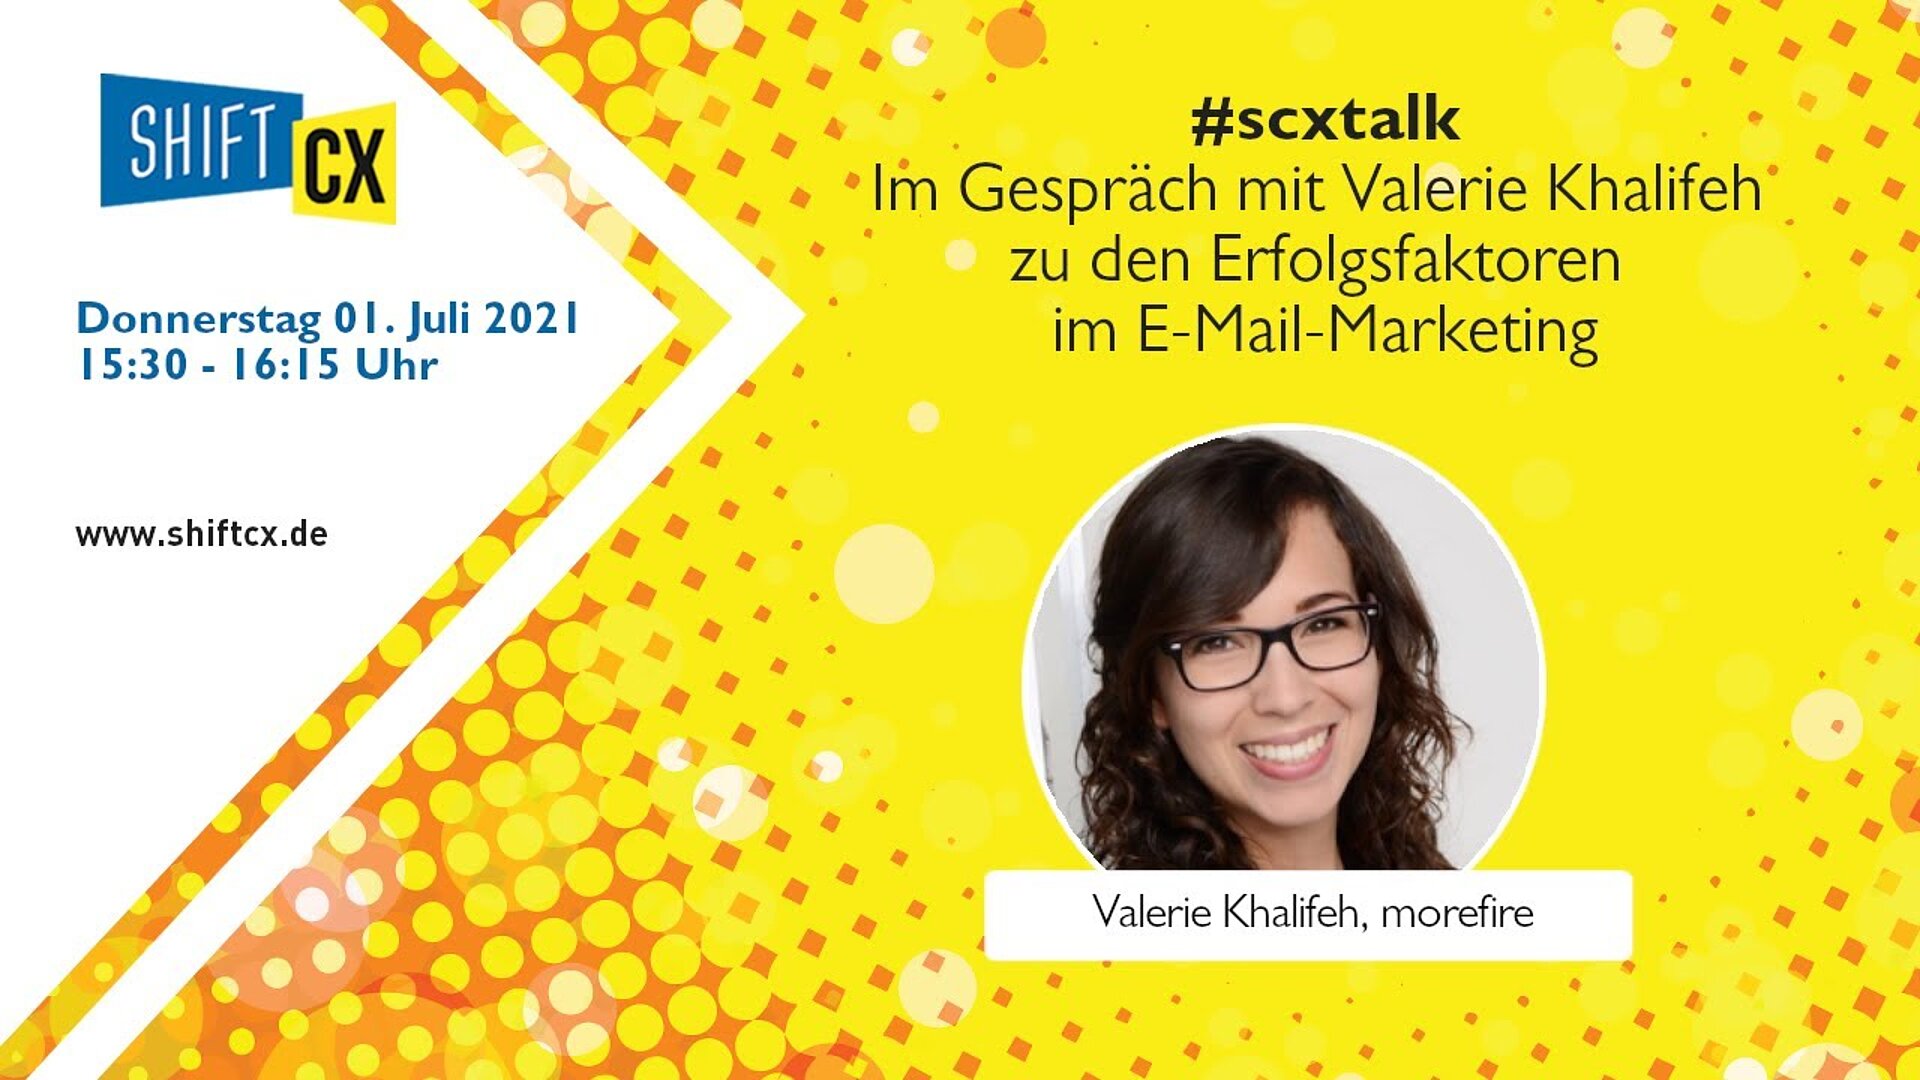 Im Gespräch mit Valerie Khalifeh zu den Erfolgsfaktoren im E-Mail-Marketing